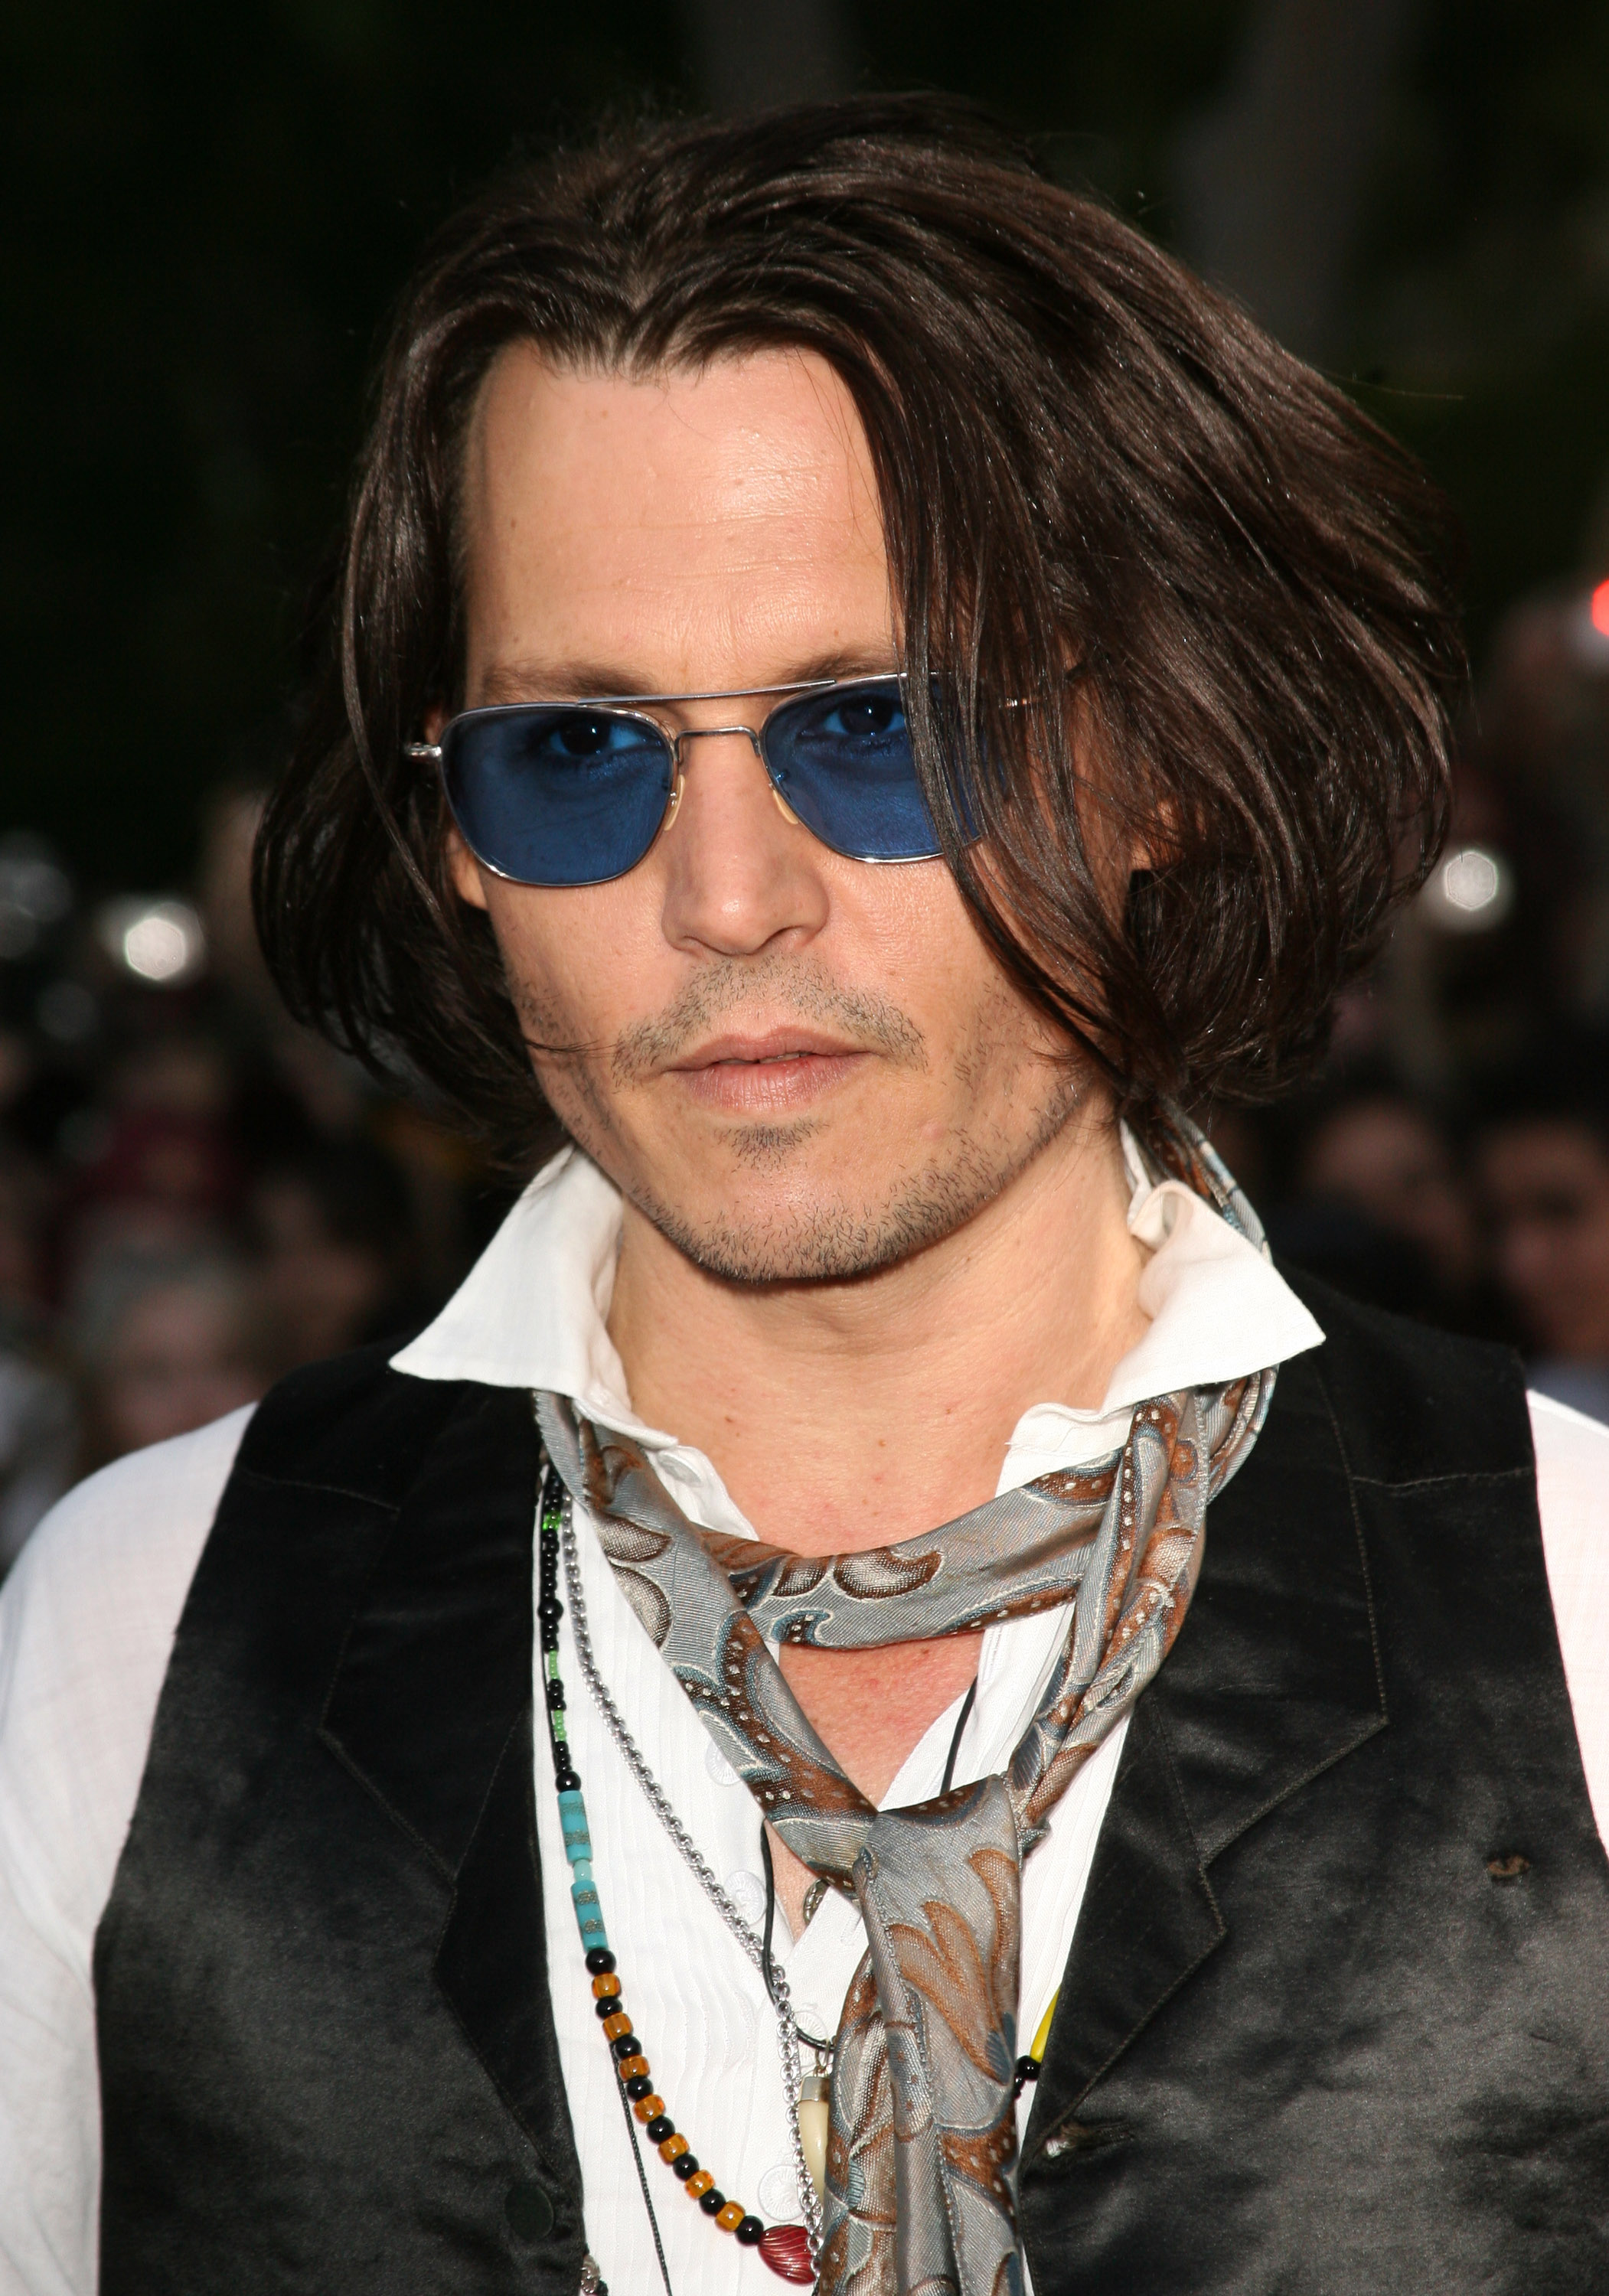 Johnny Depp bei der Weltpremiere von "Pirates of the Caribbean: At World's End" in Anaheim, Kalifornien am 19. Mai 2007 | Quelle: Getty Images